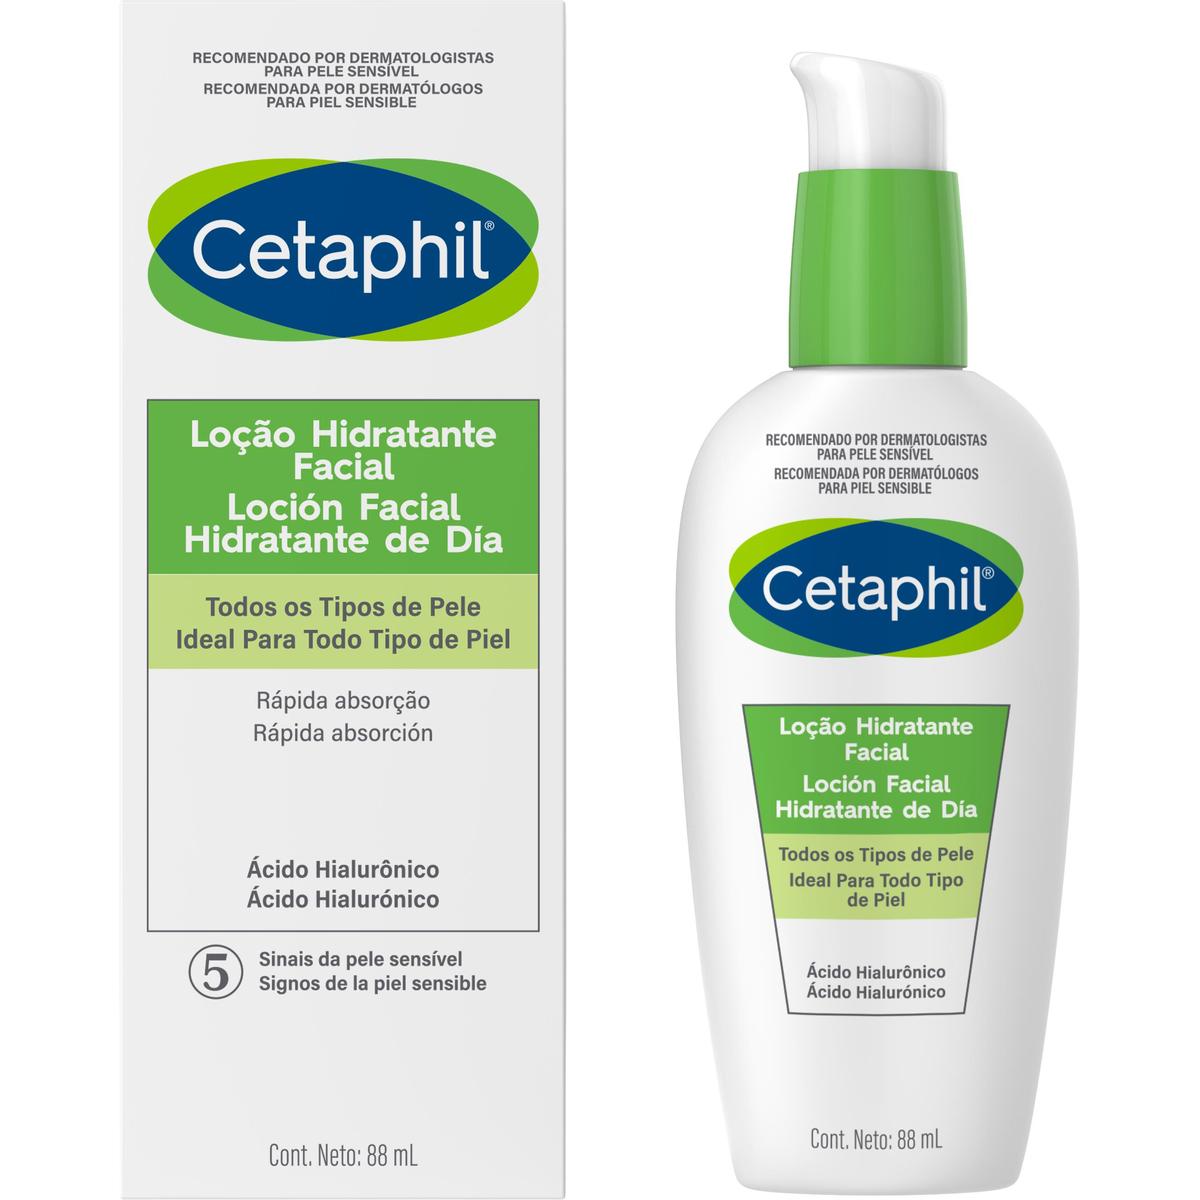 Cetaphil, Loción facial hidratante de día, 88ml